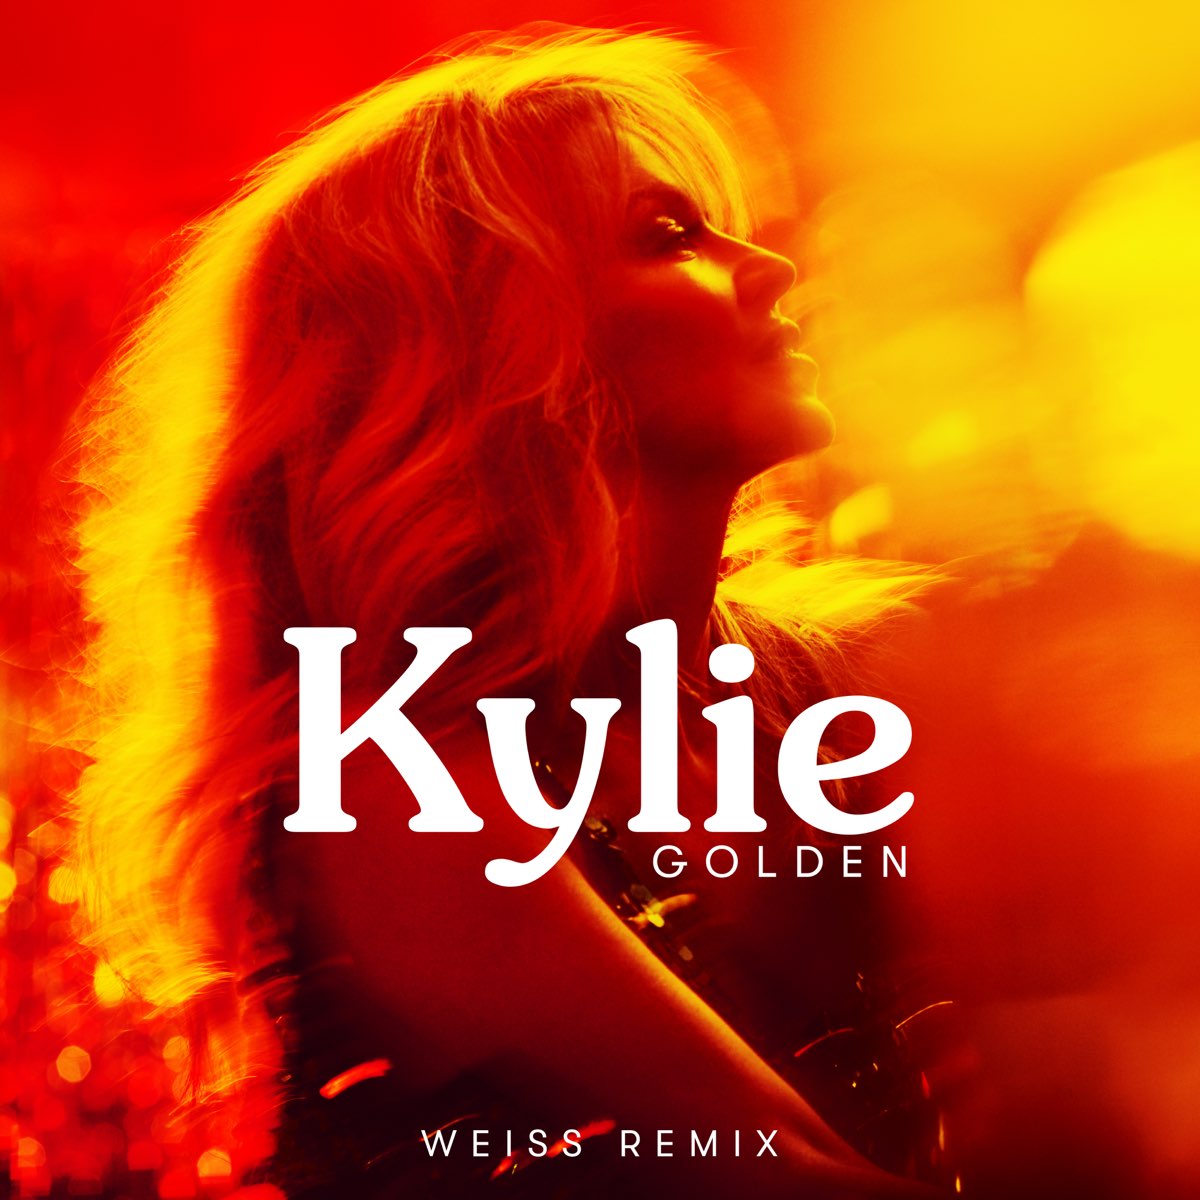 Kylie Minogue — Golden (Weiss Remix) cover artwork